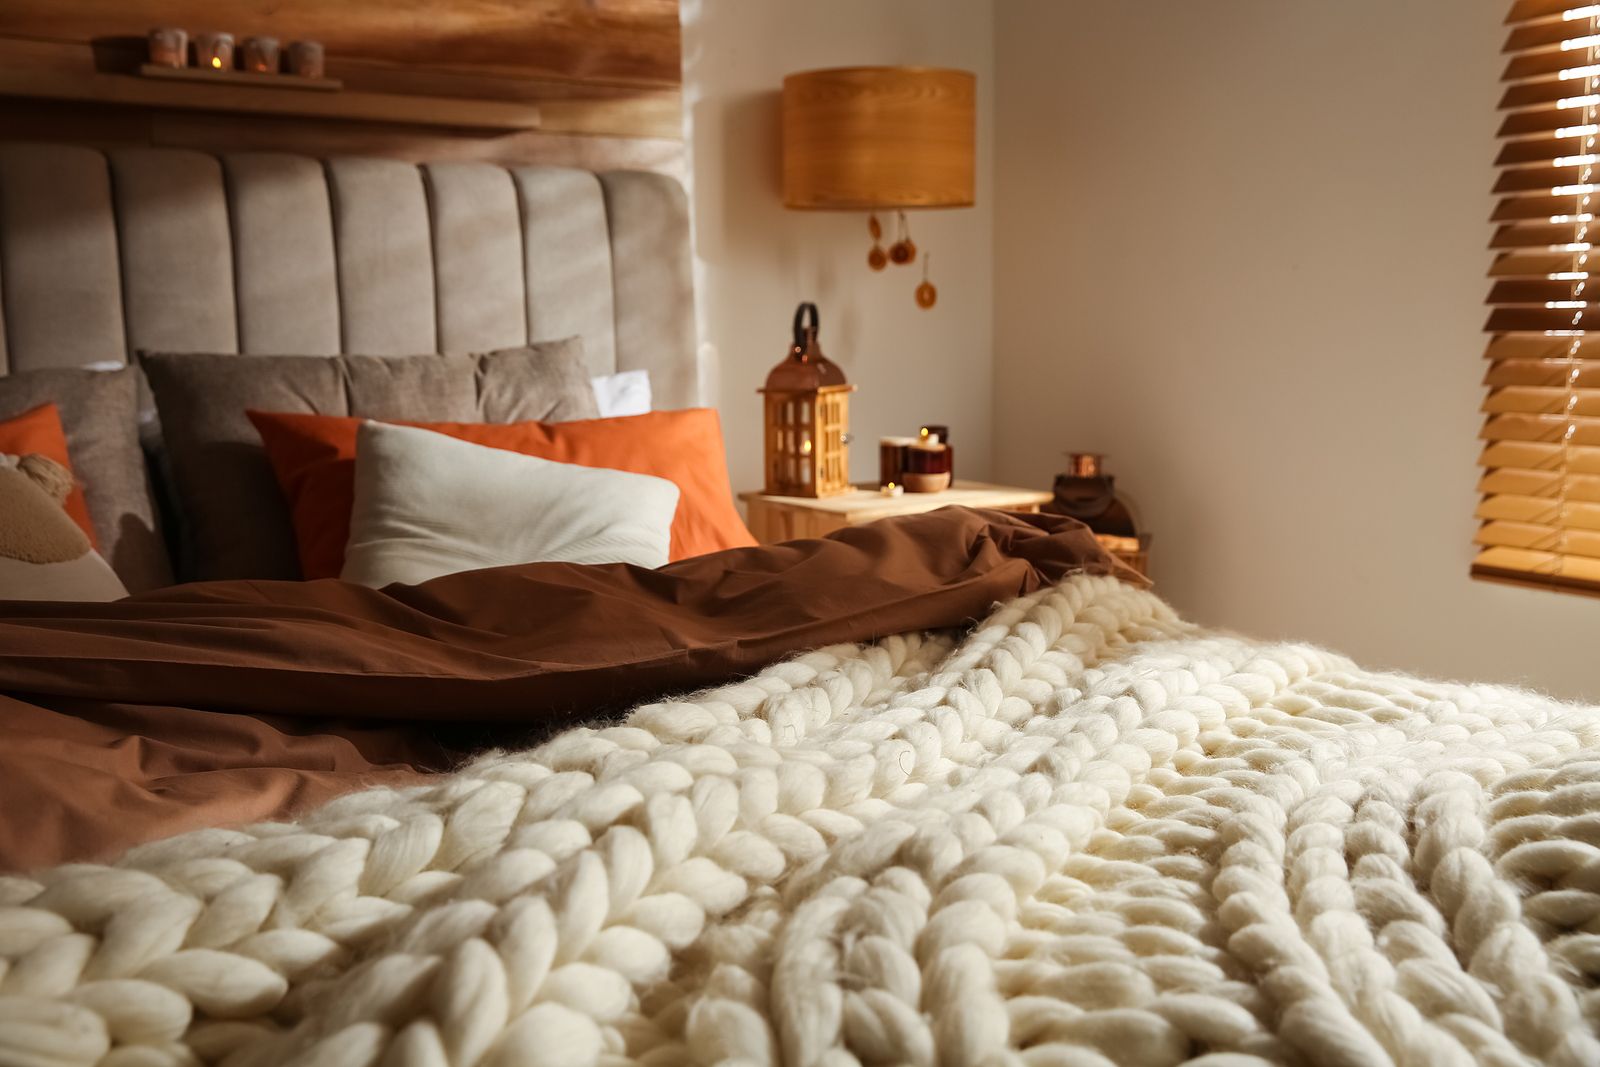 Las zonas de la cama que debes limpiar con más frecuencia Foto: bigstock